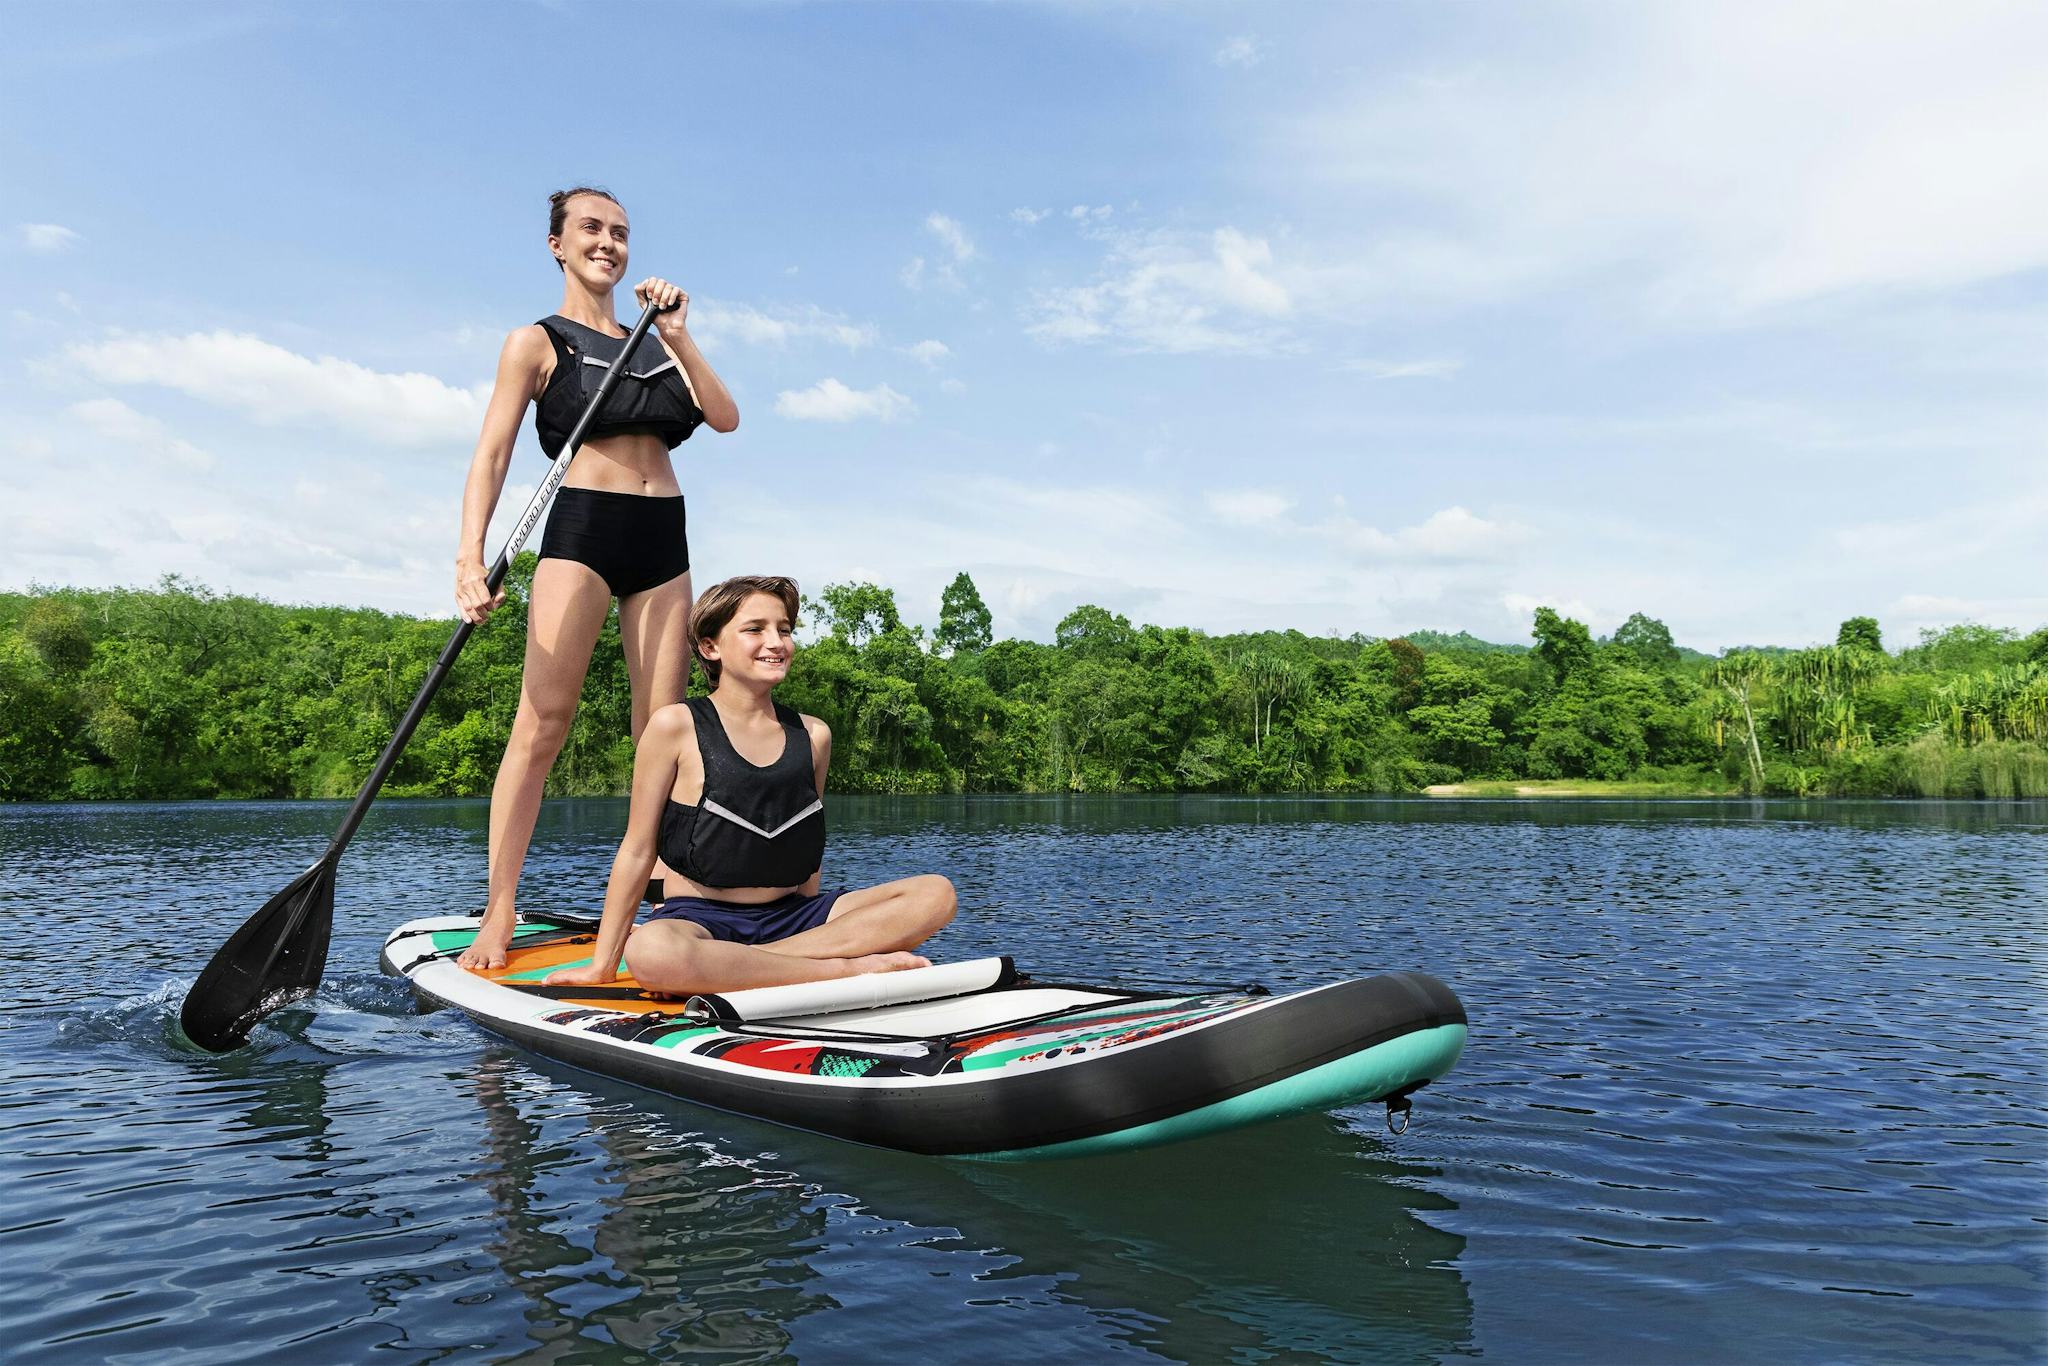 Sports d'eau Paddle SUP gonflable Hydro-Force™ Breeze Panorama, 305 x 84 x 12 cm avec hublot, pagaie, leash, pompe, 1 aileron et sac à dos de transport Bestway 6